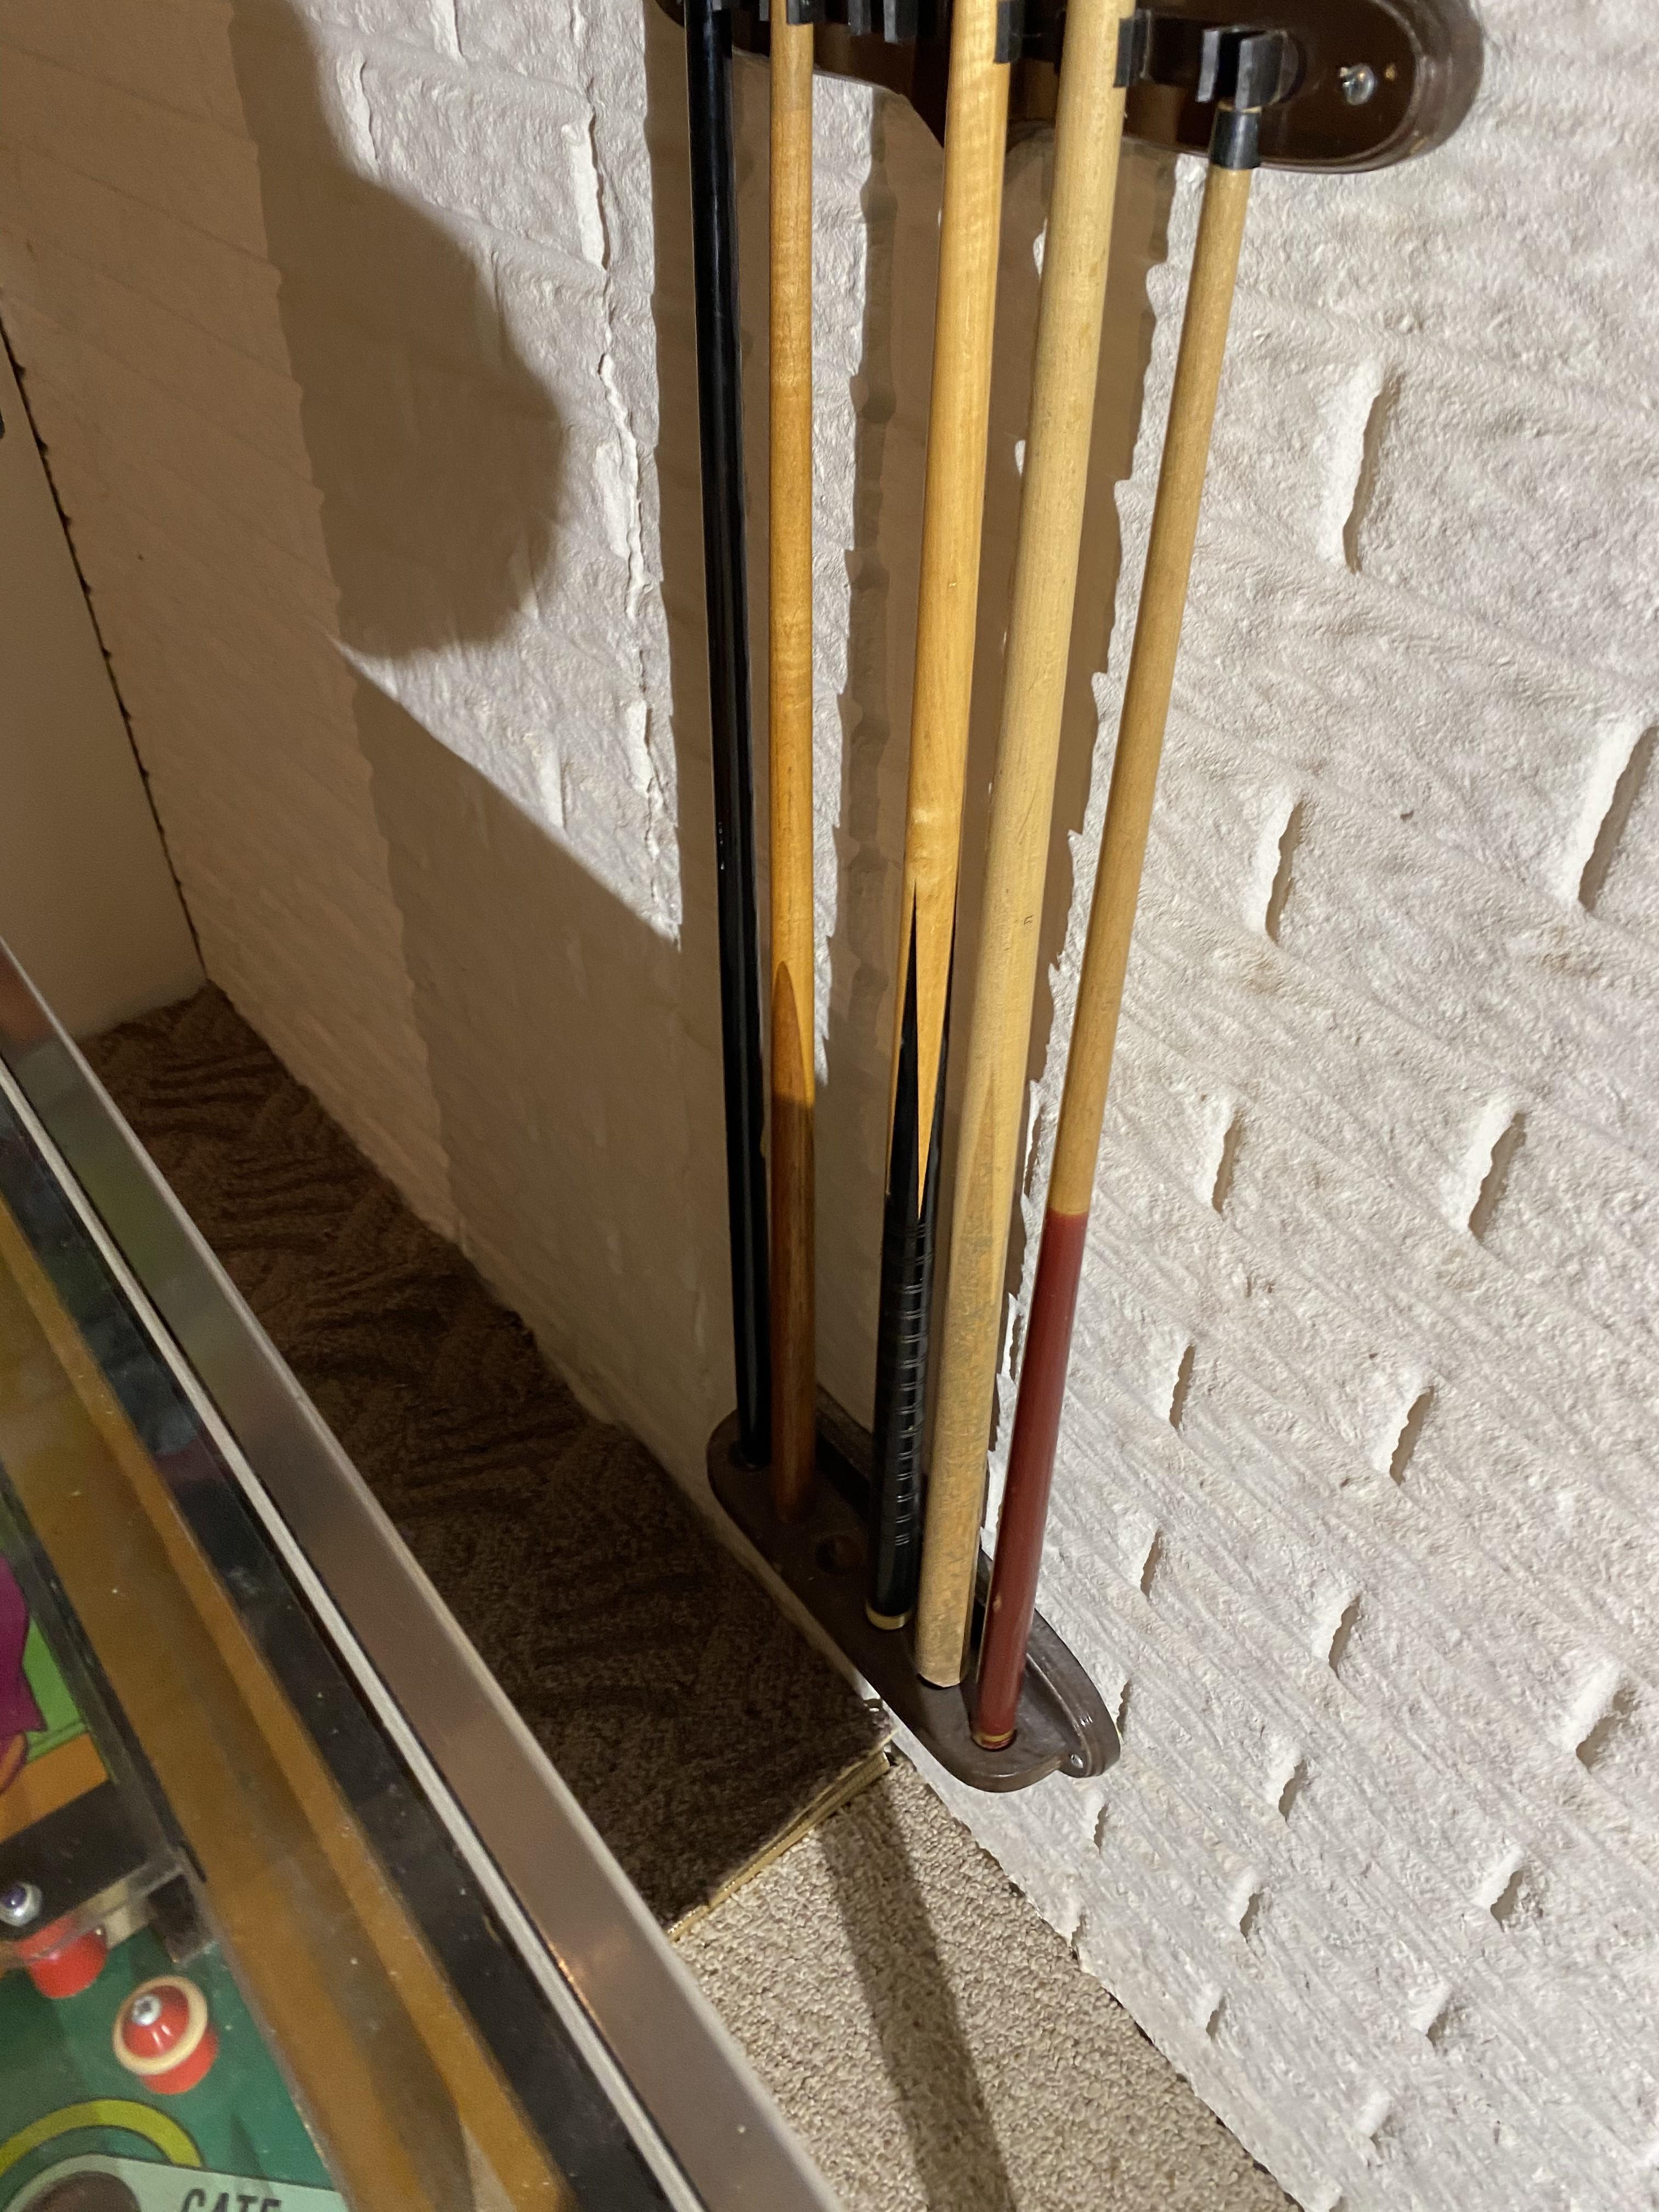 2 racks full of Vintage Pool Cue Sticks